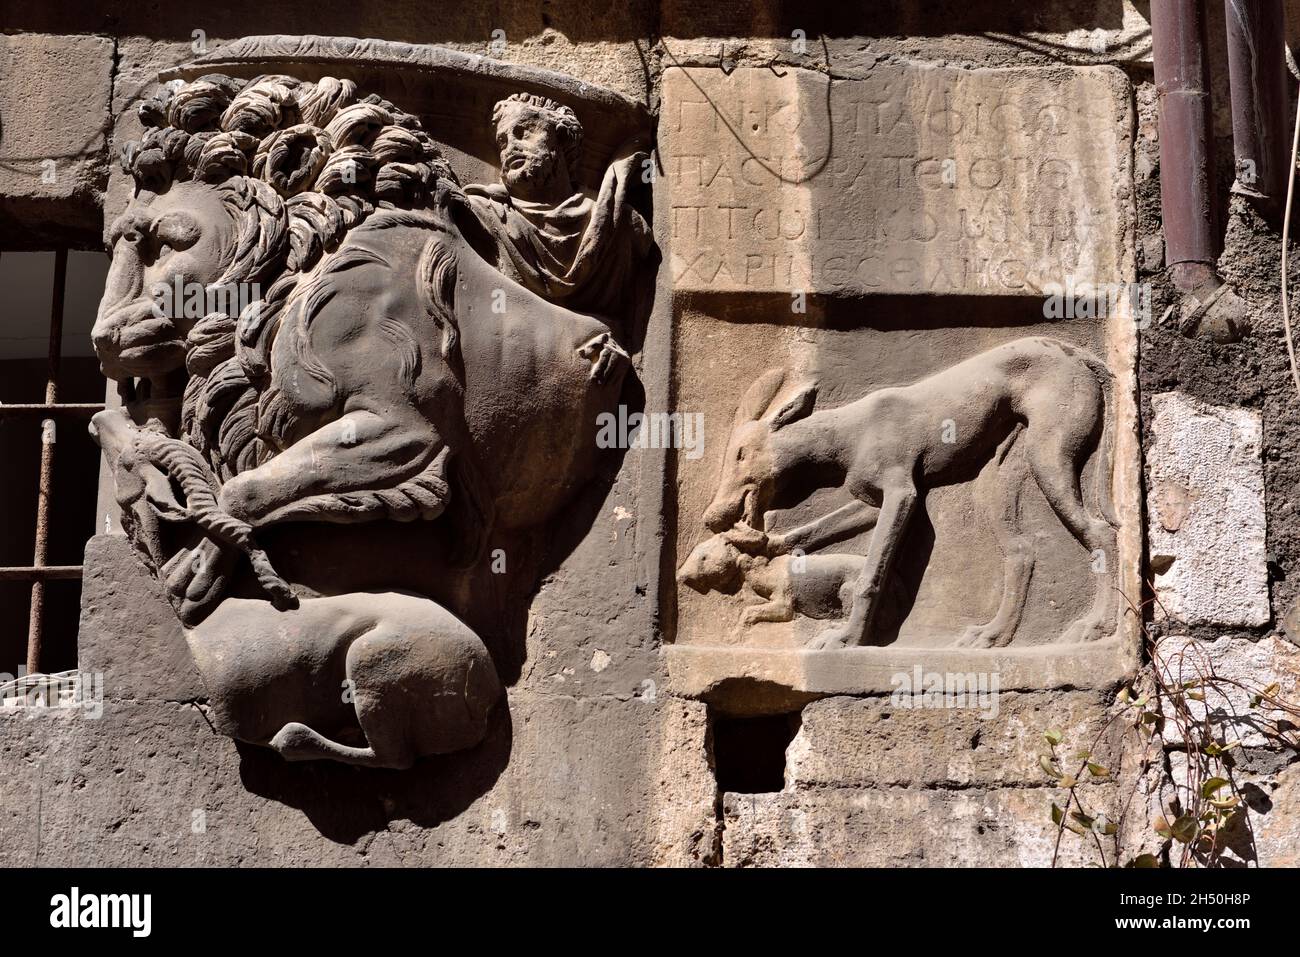 Italie, Rome, Ghetto juif, via del Portico d'Ottavia, maison de Lorenzo Manilio, fragment de sarcophage romain avec lion et bas relief avec cerf Banque D'Images